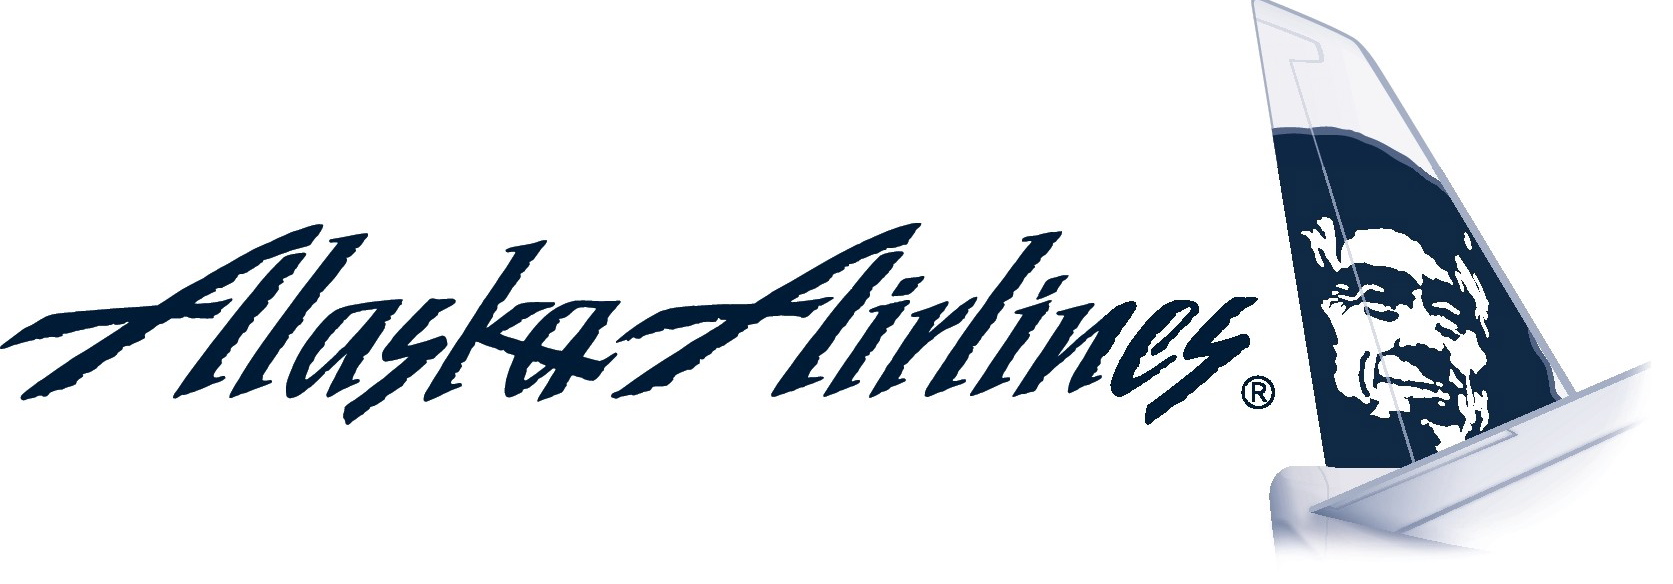 Alaska-Airlines-logo-3